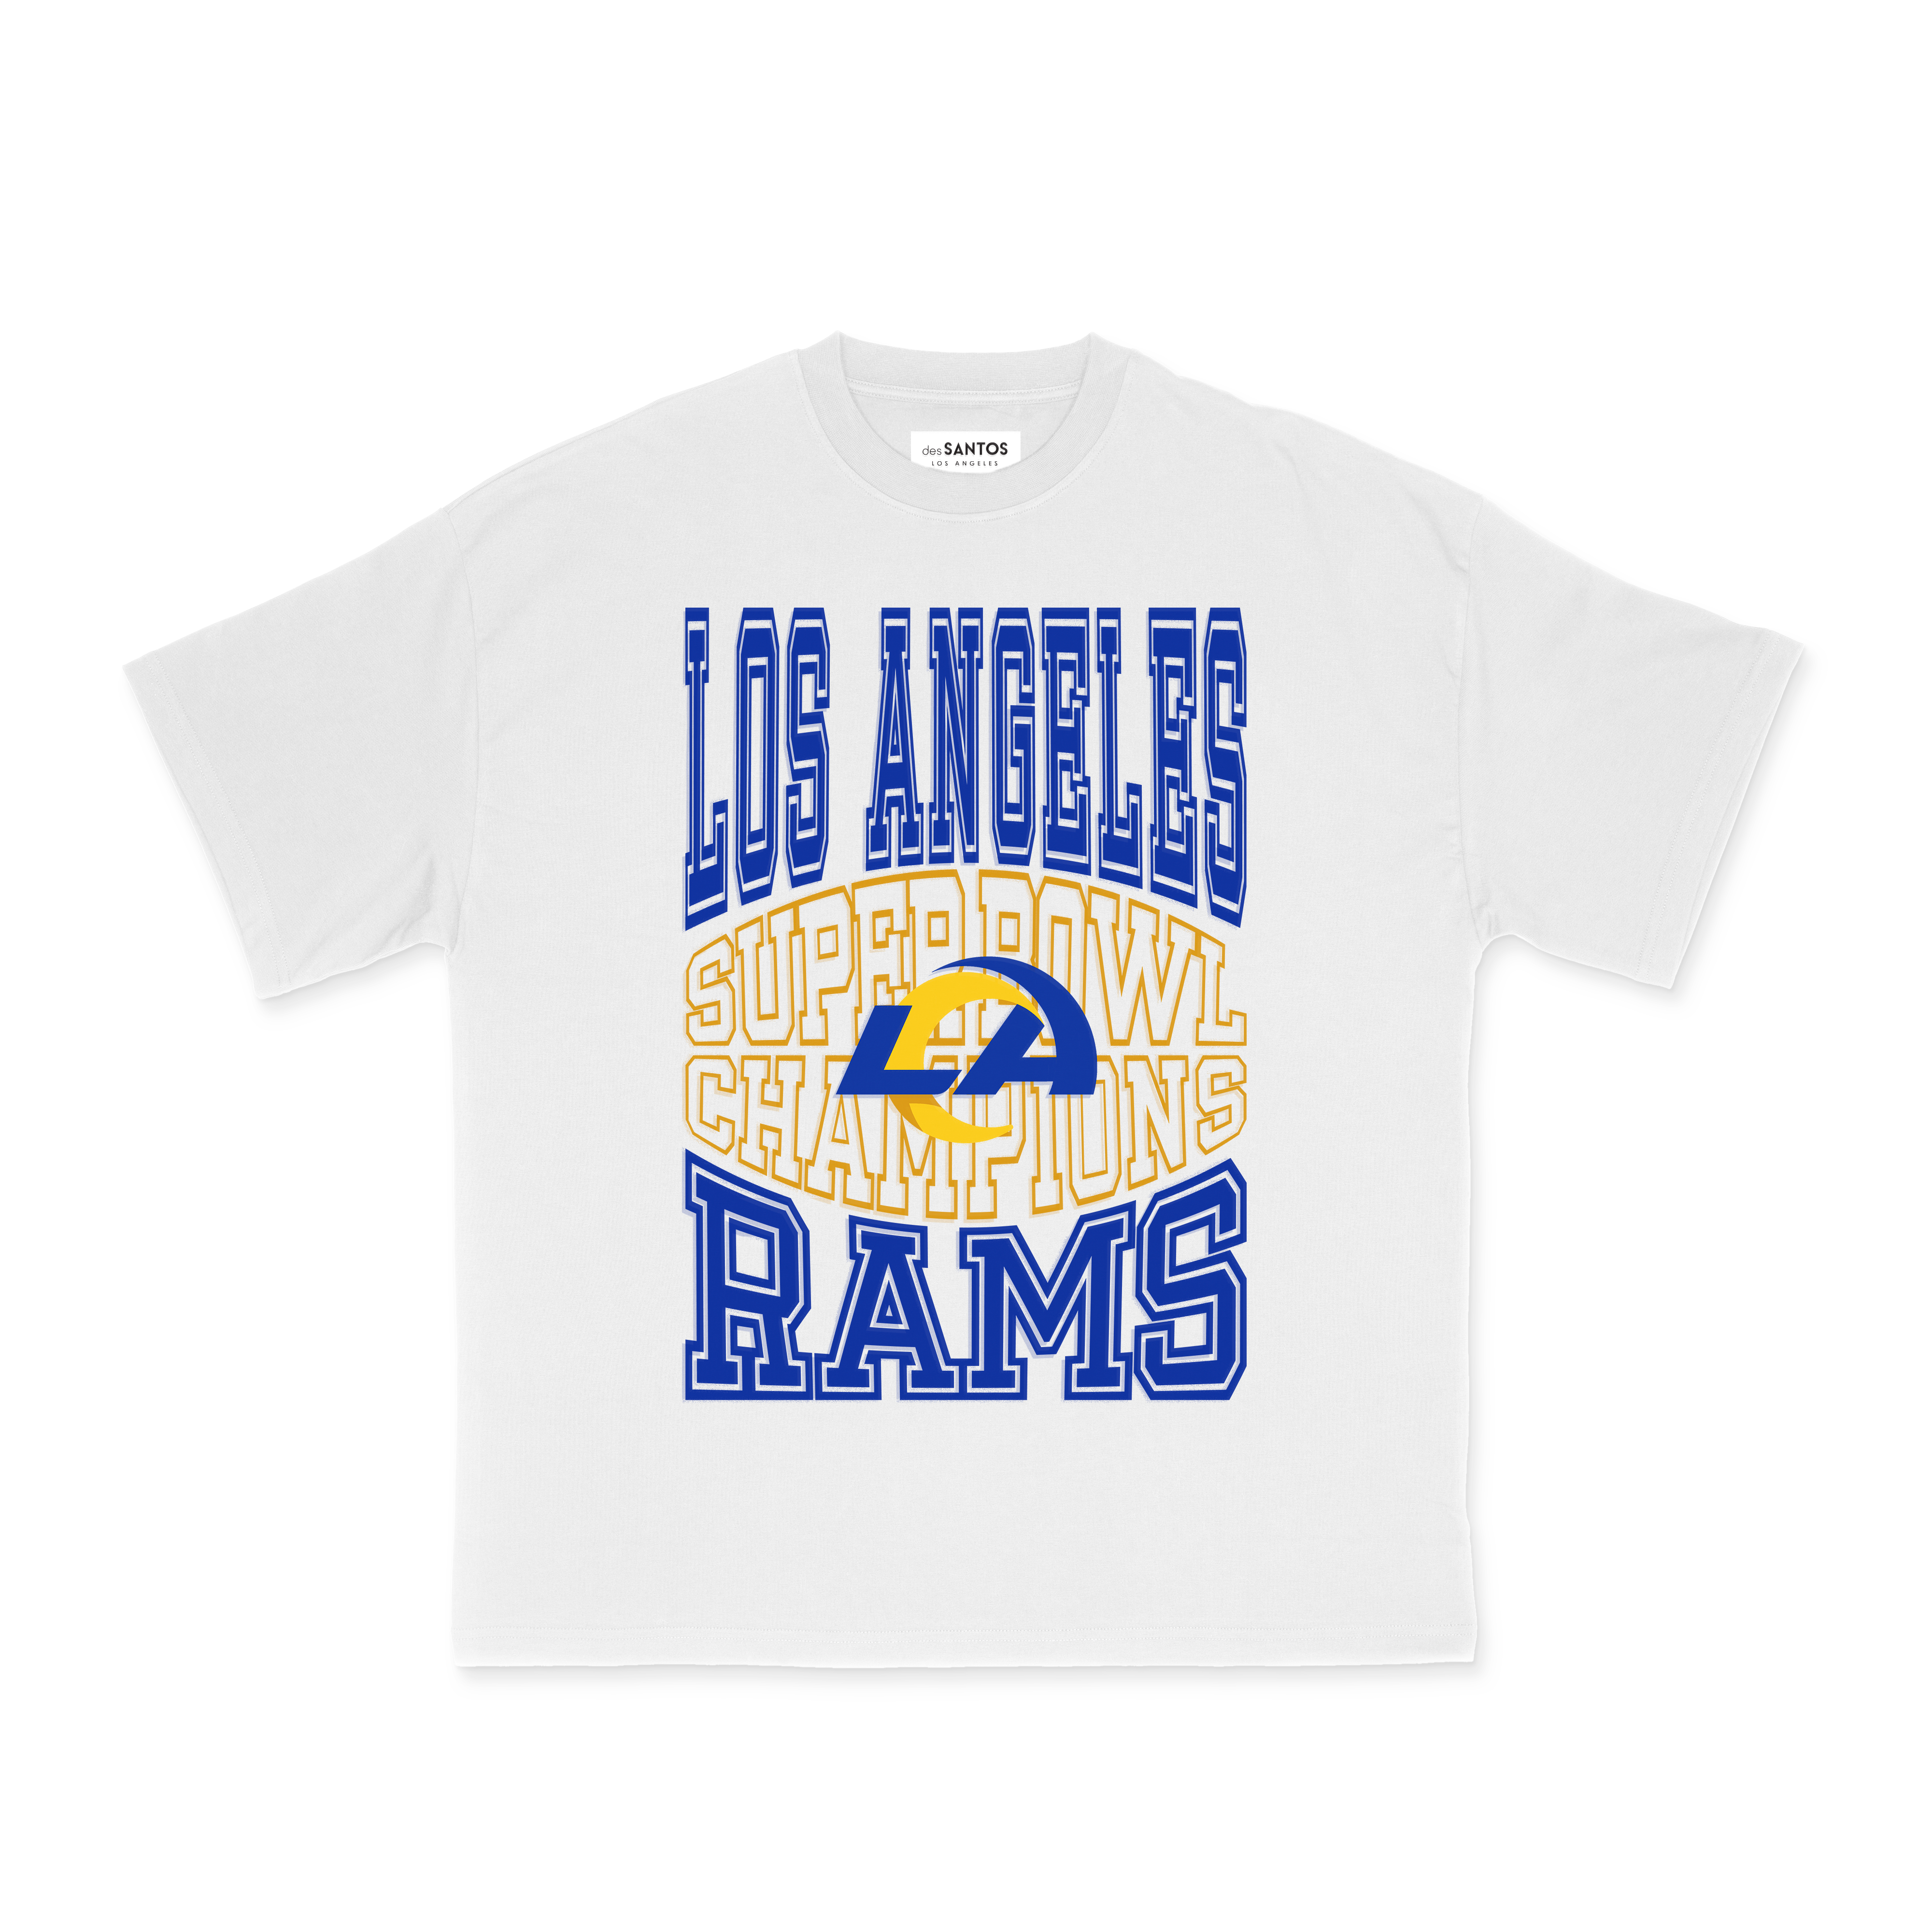 Vintage Rams Championship T-Shirt – Des Santos